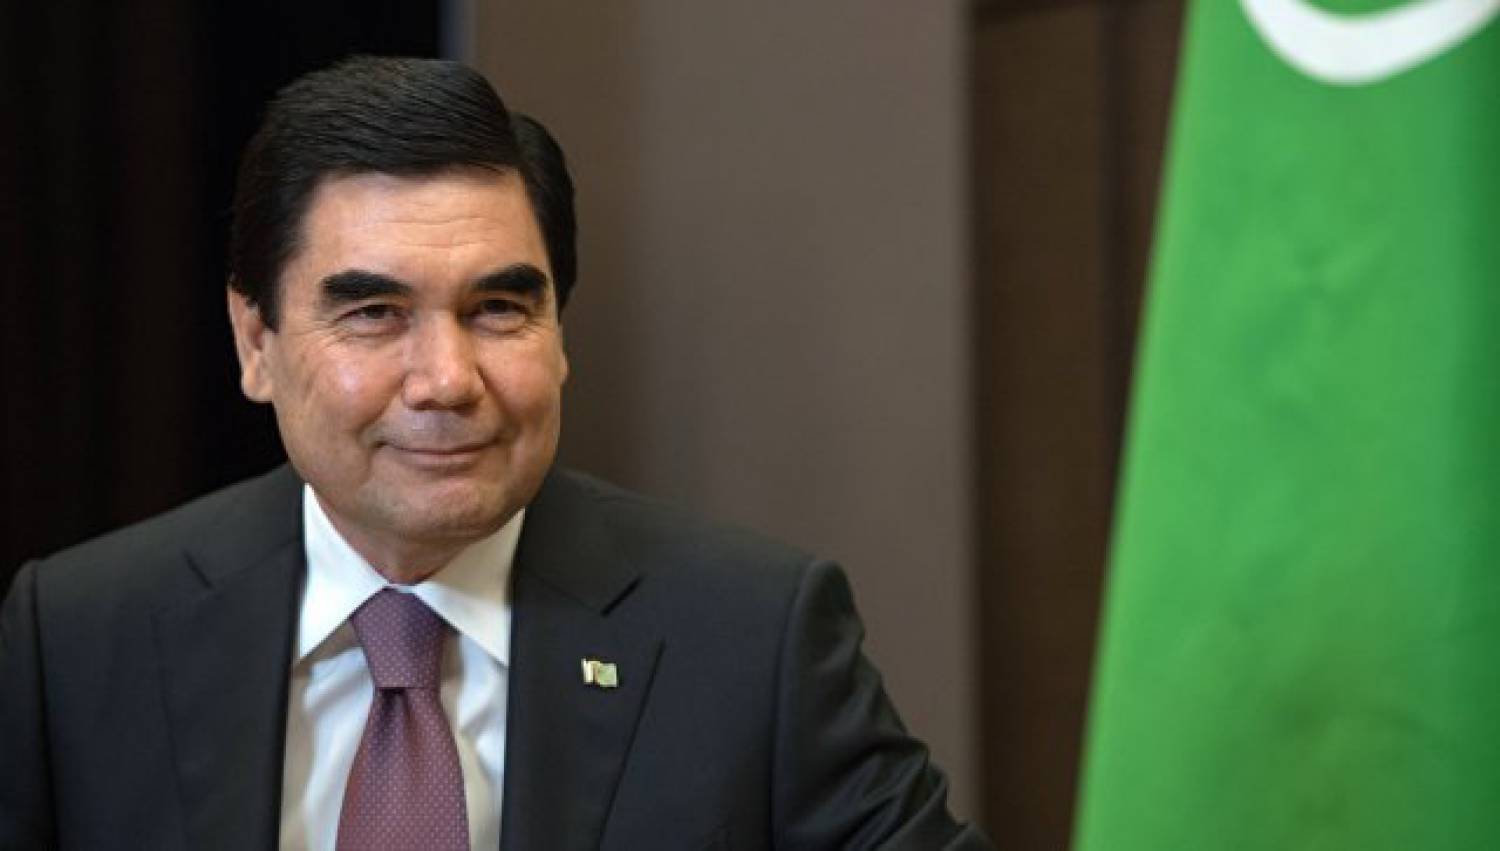 Власти Туркменистана заставляют поклясться на Коране, что пользователи Интернета не будут использовать VPN